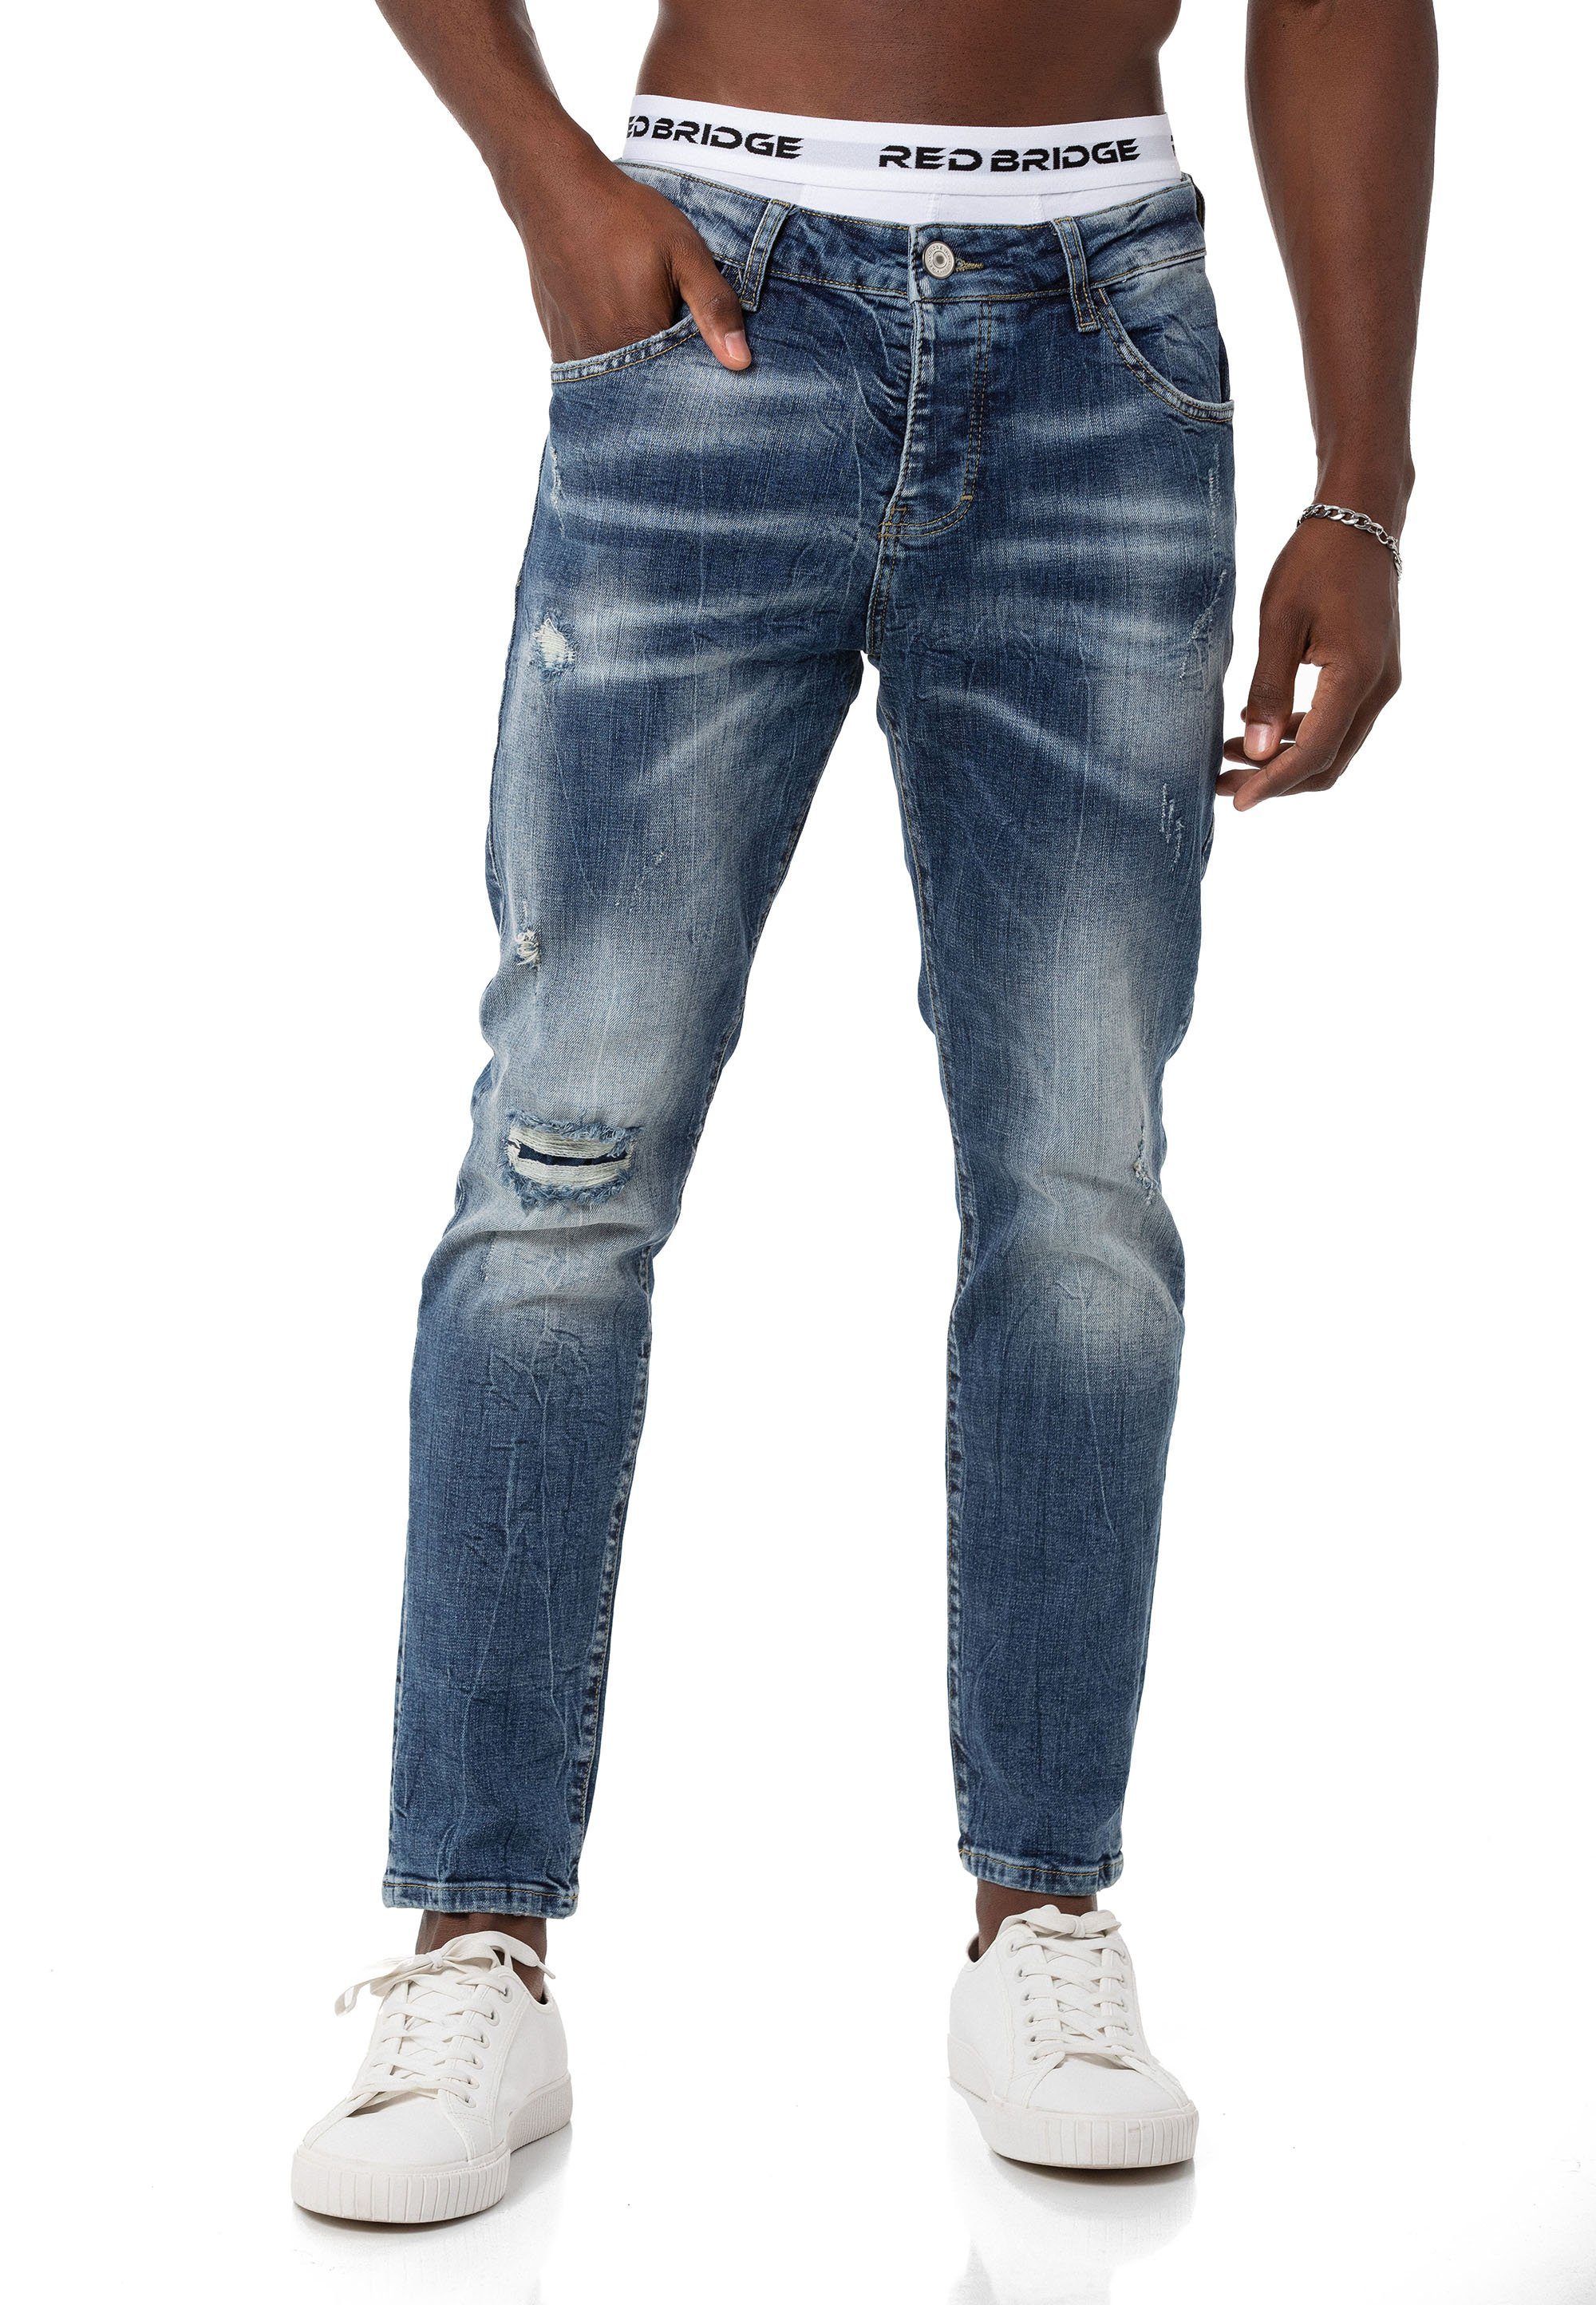 RedBridge Slim-fit-Jeans Hose Straight Leg Denim Pants Distressed-Look Blau